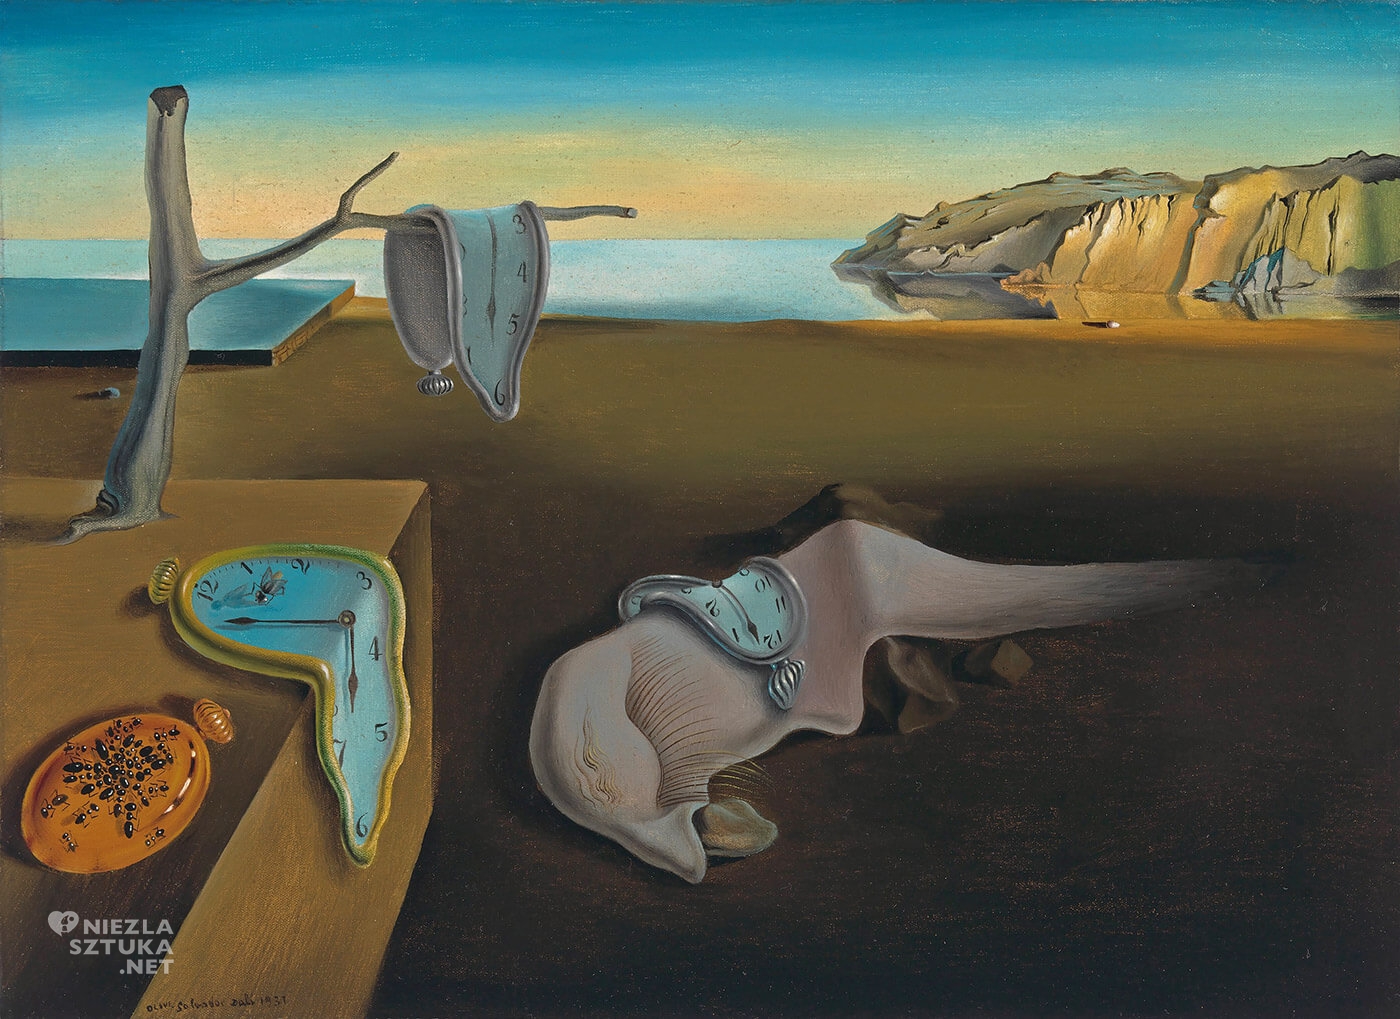 Salvador Dali, Trwałość pamięci, Miękkie zegary, Uporczywość pamięci, malarstwo hiszpańskie, surrealizm, Niezła sztuka